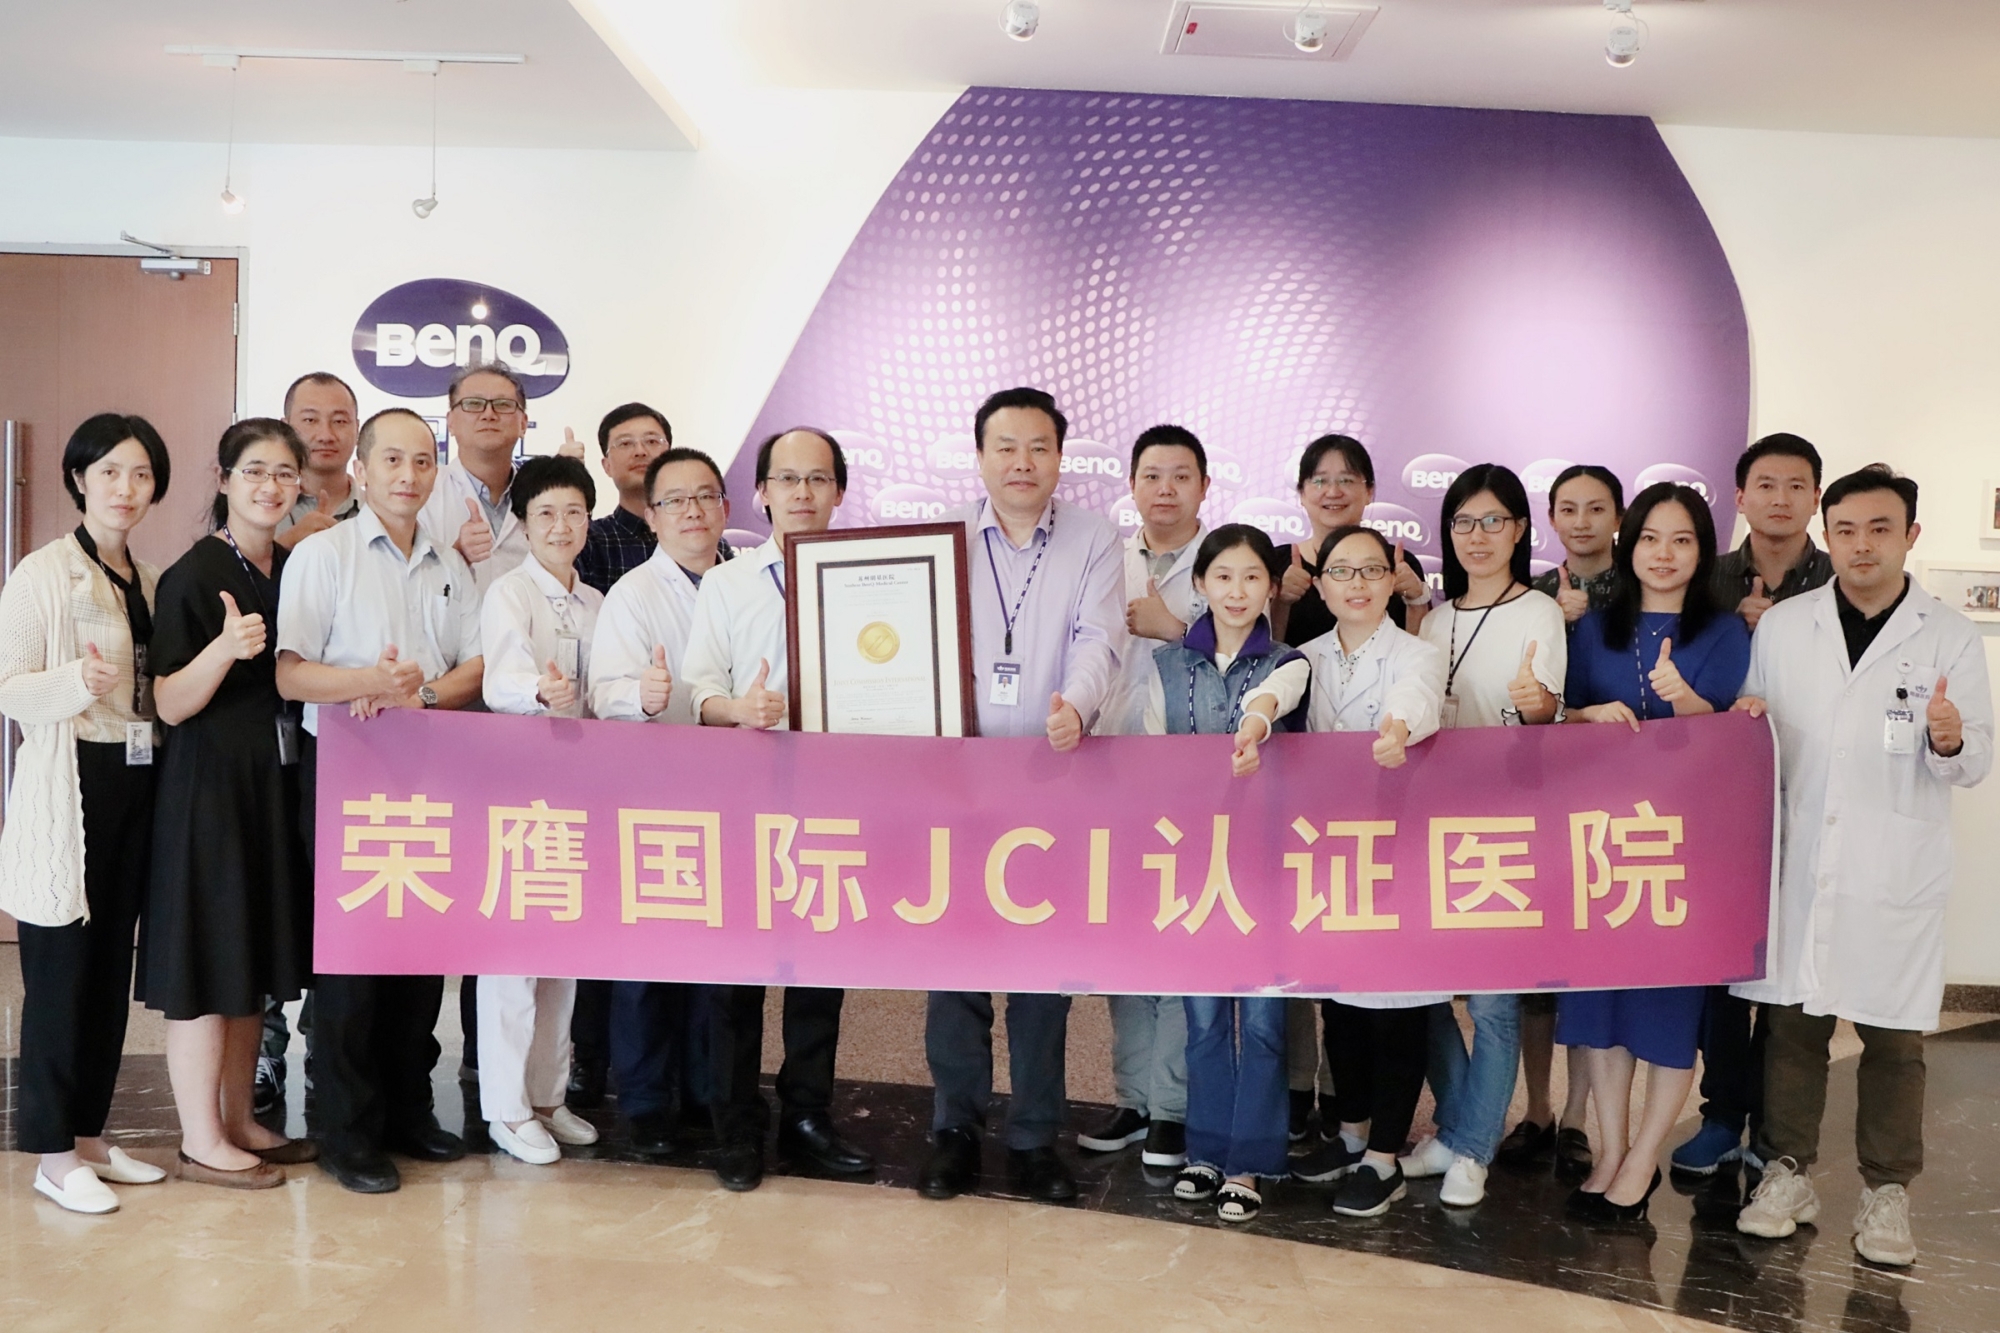 蘇州明基醫院取得JCI國際醫療認證 躋身世界高品質醫院